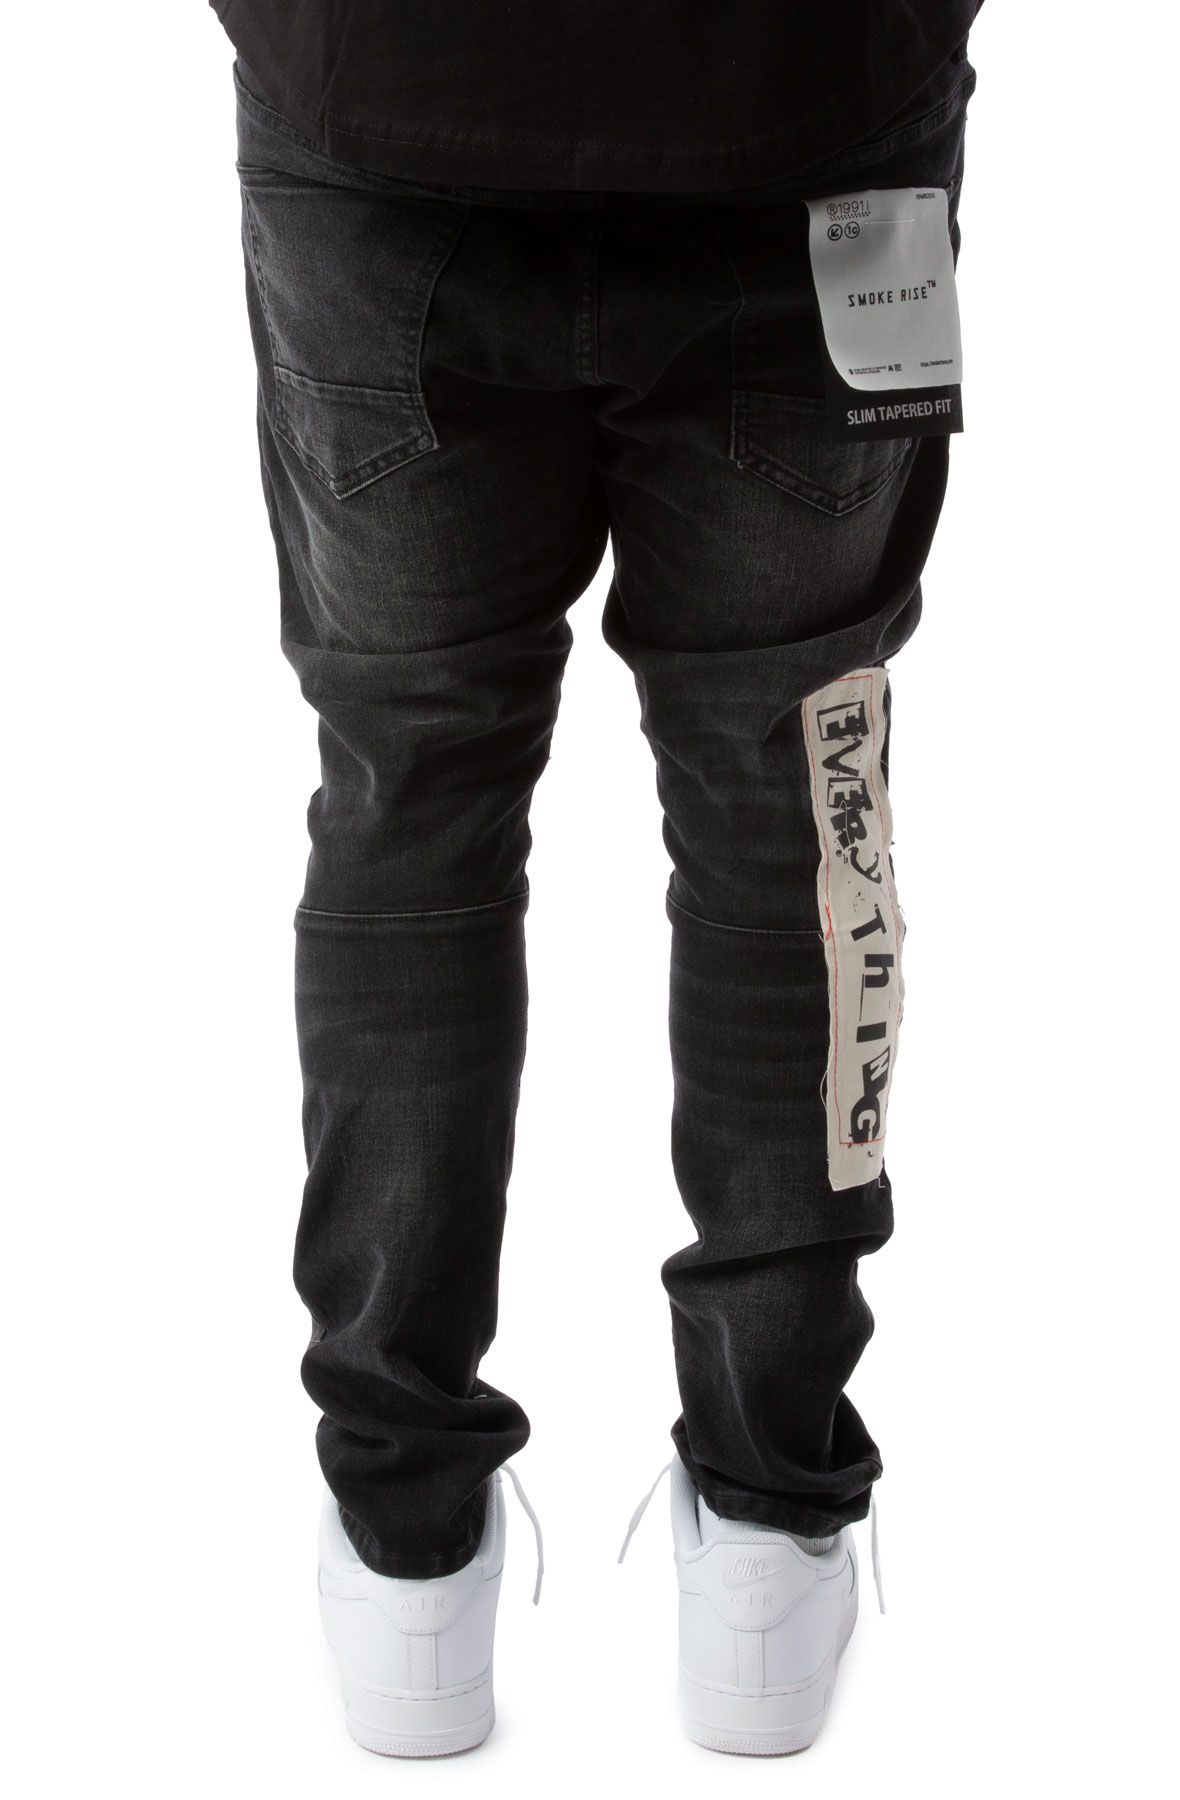 Smoke Rise Mens Fashion Demon Graphic Jeans Jet Black